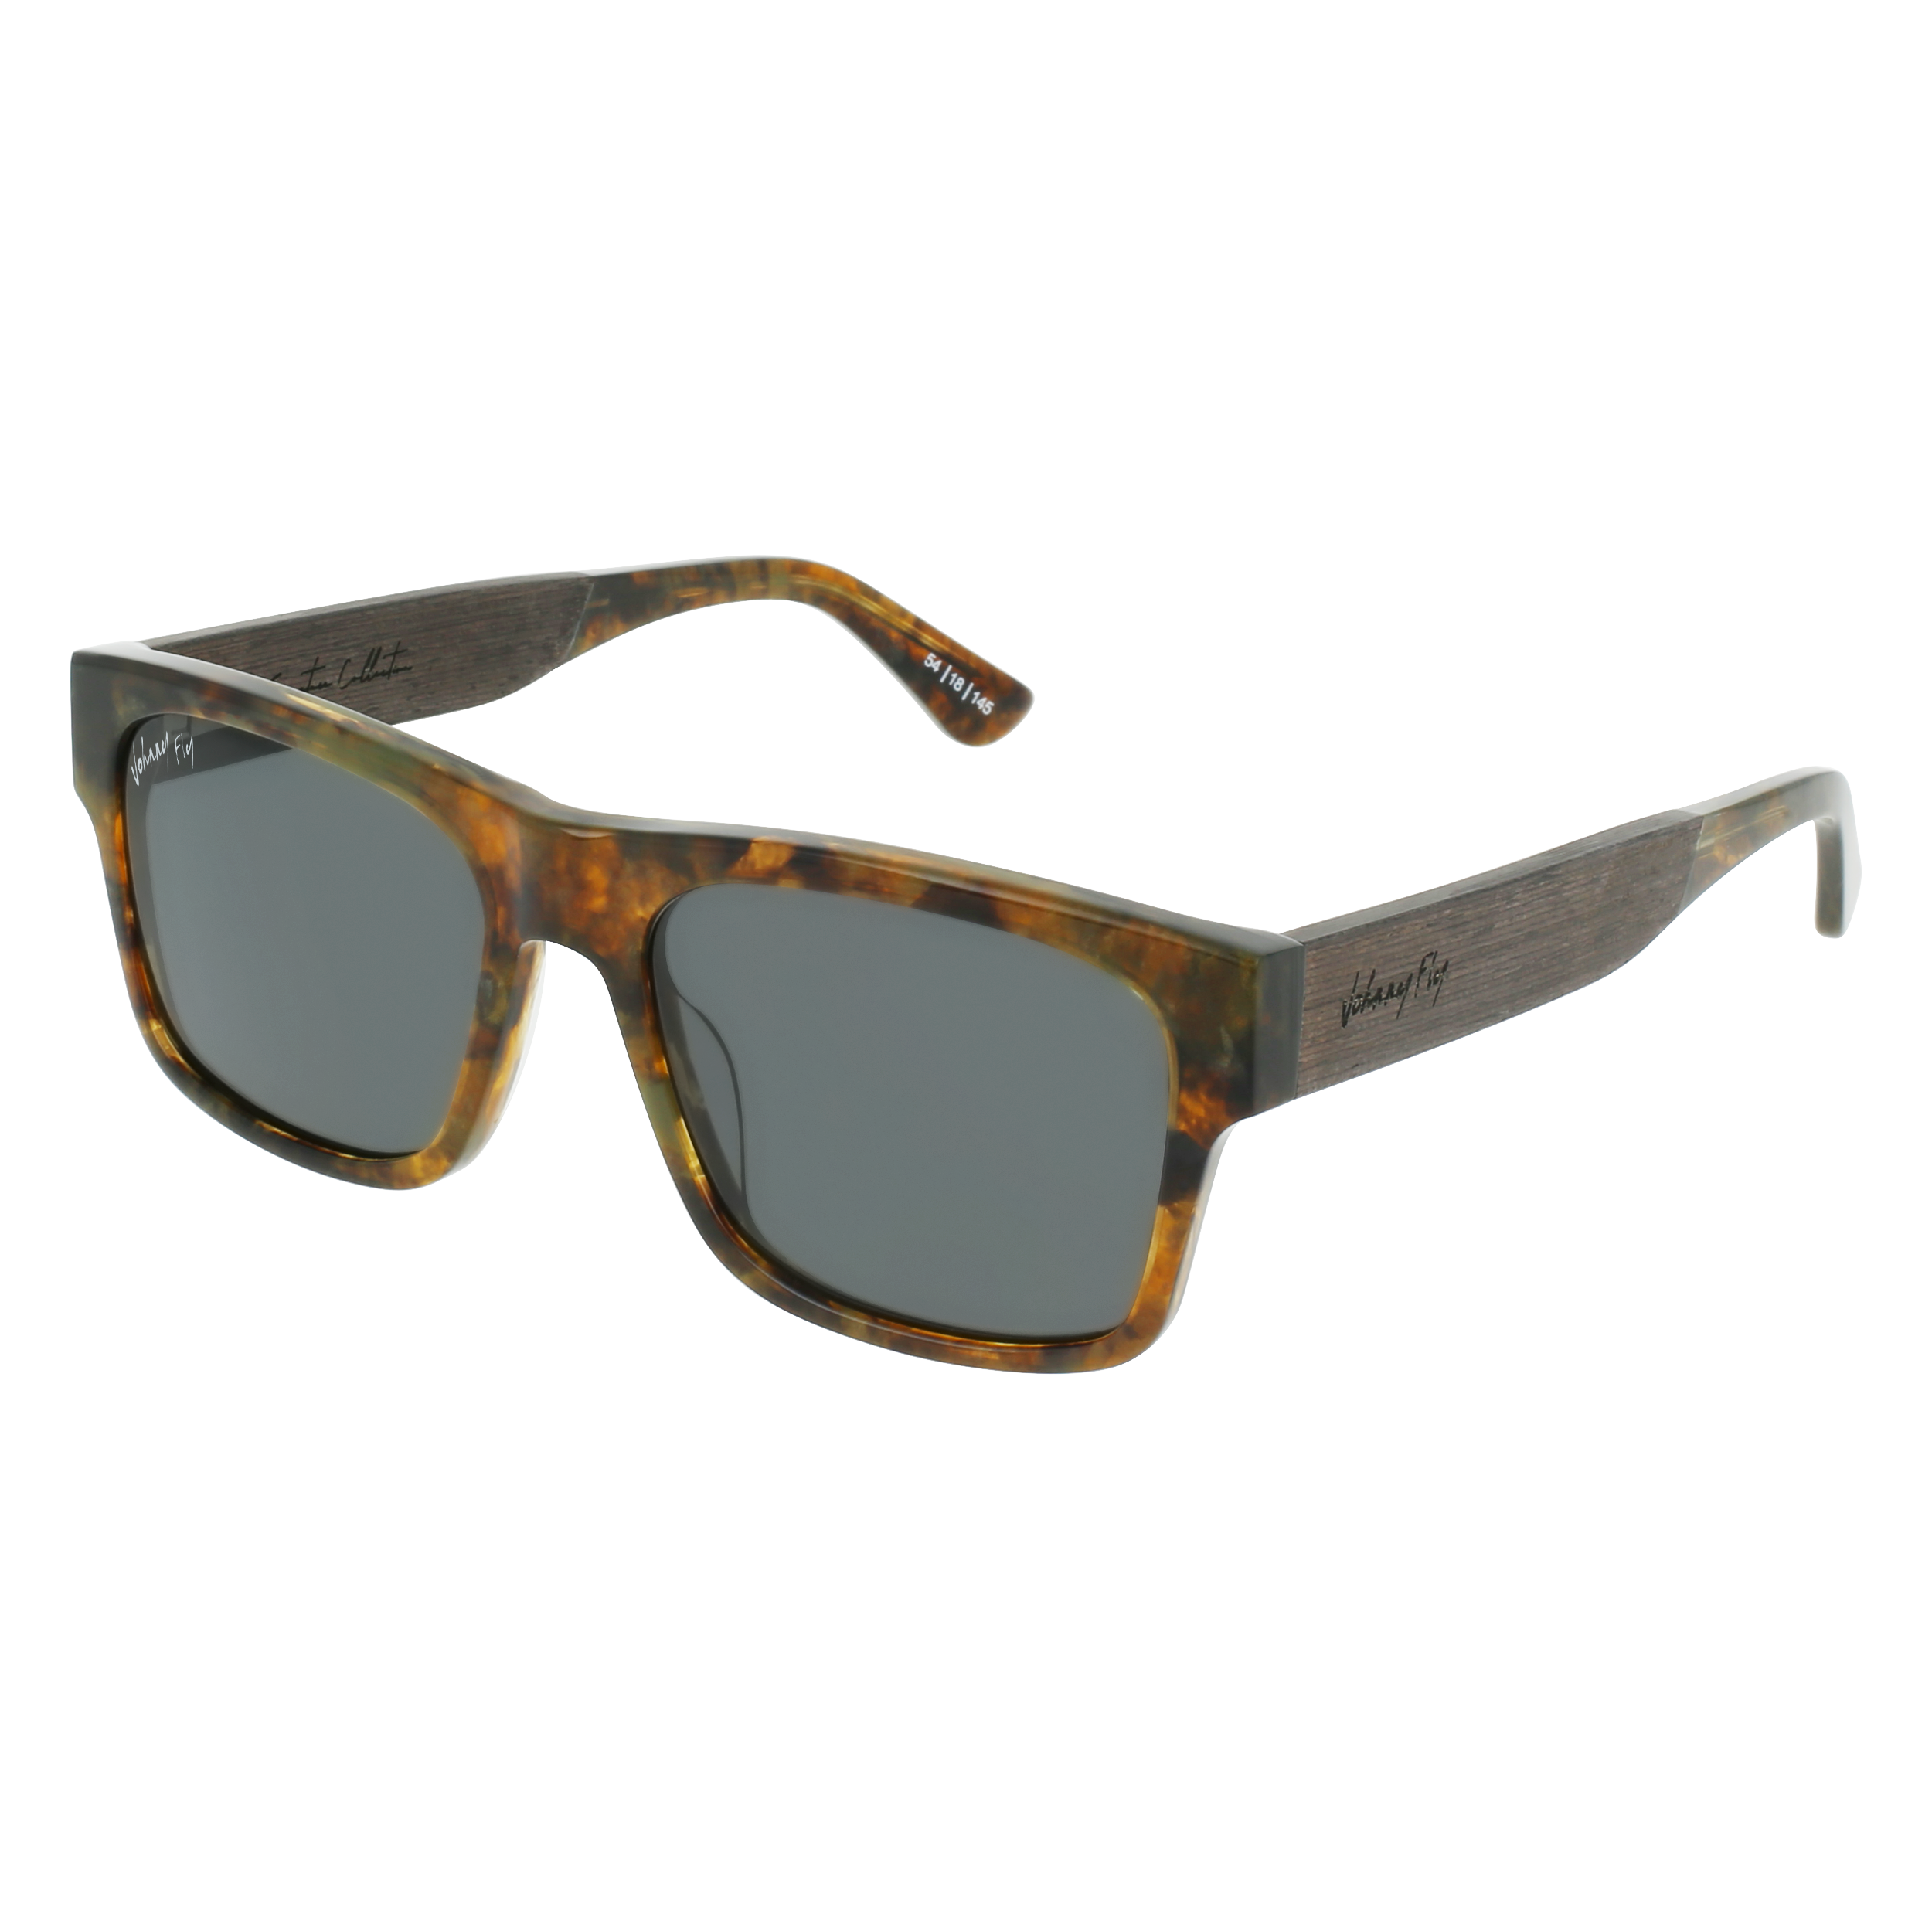 Johnny Fly Arrow Mars / Smoke Polarized Sunglasses | 